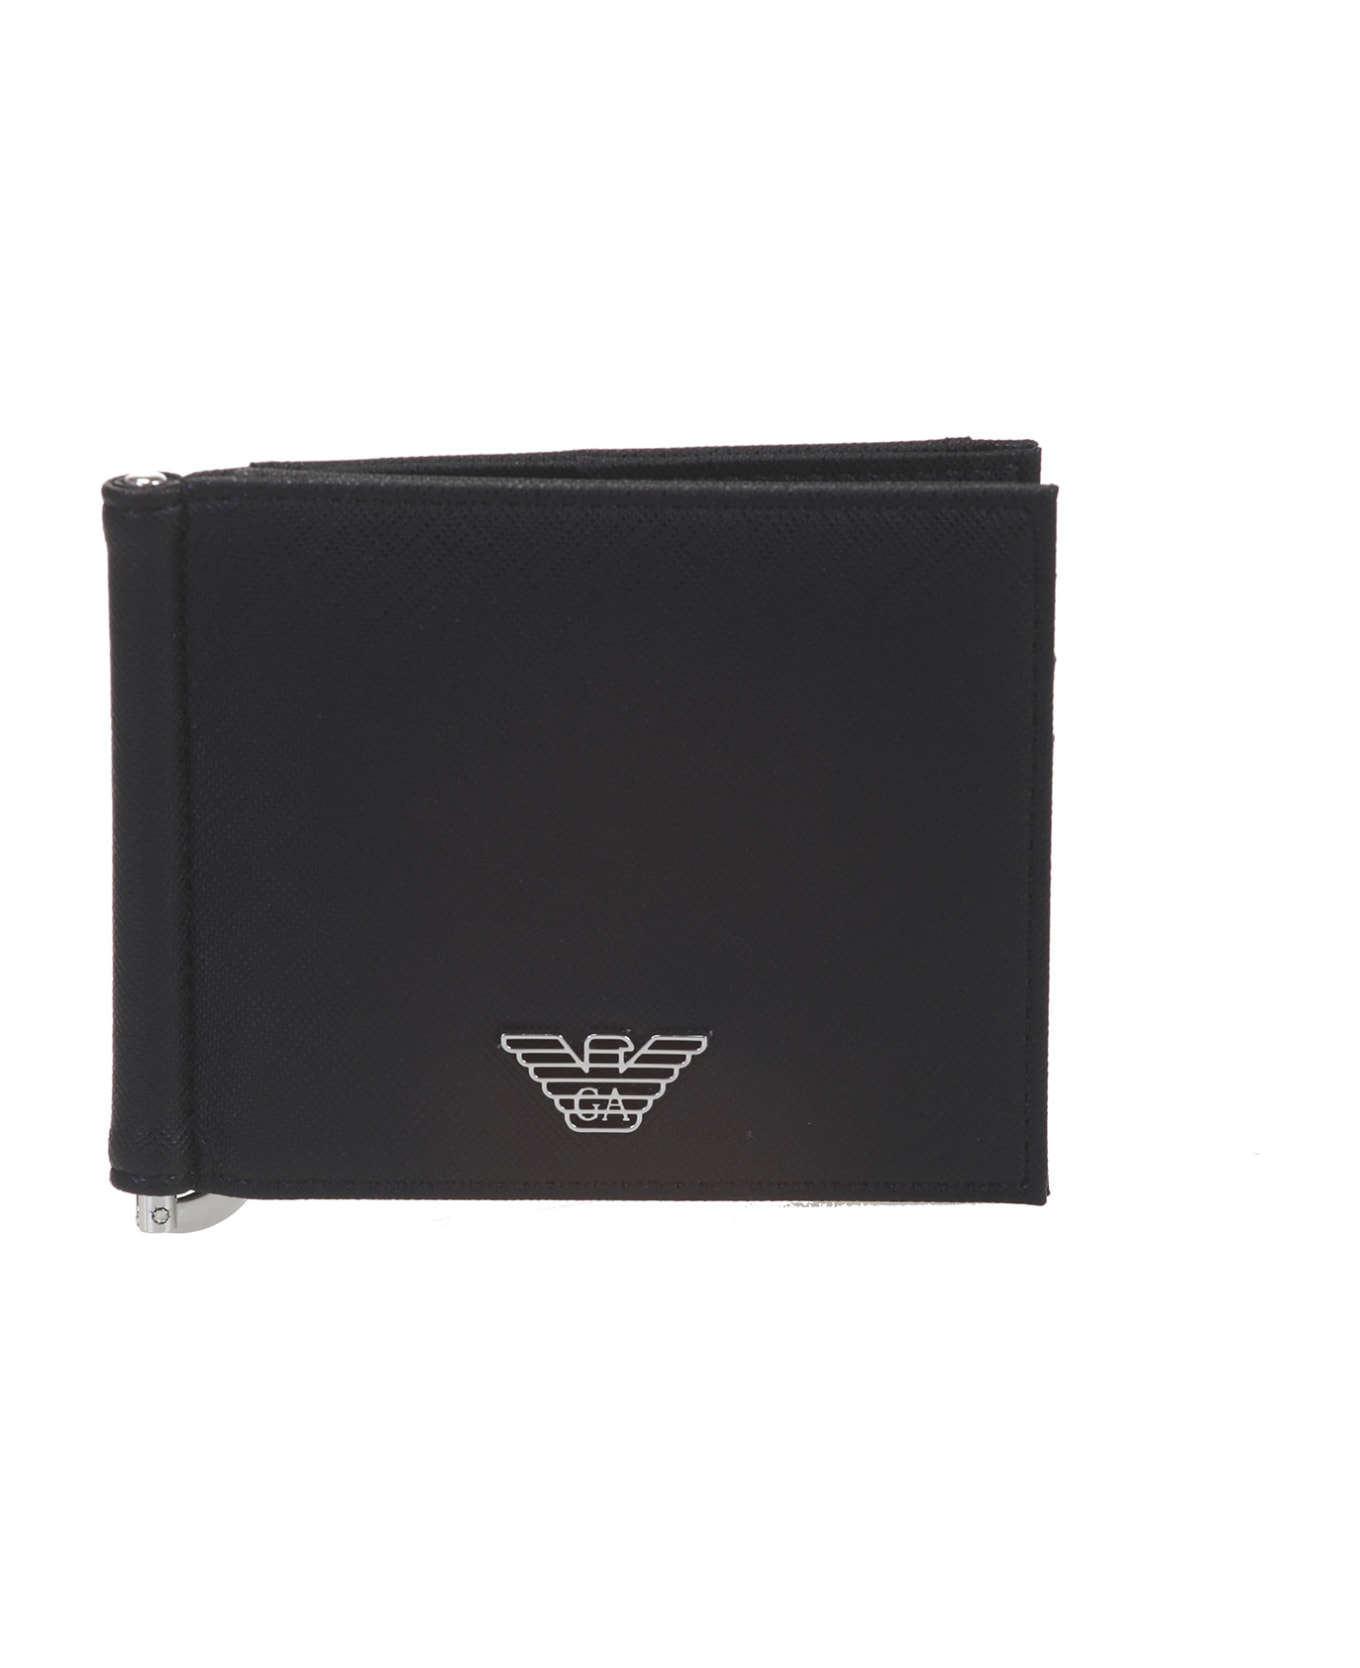 Emporio Armani Wallets Black - Black 財布